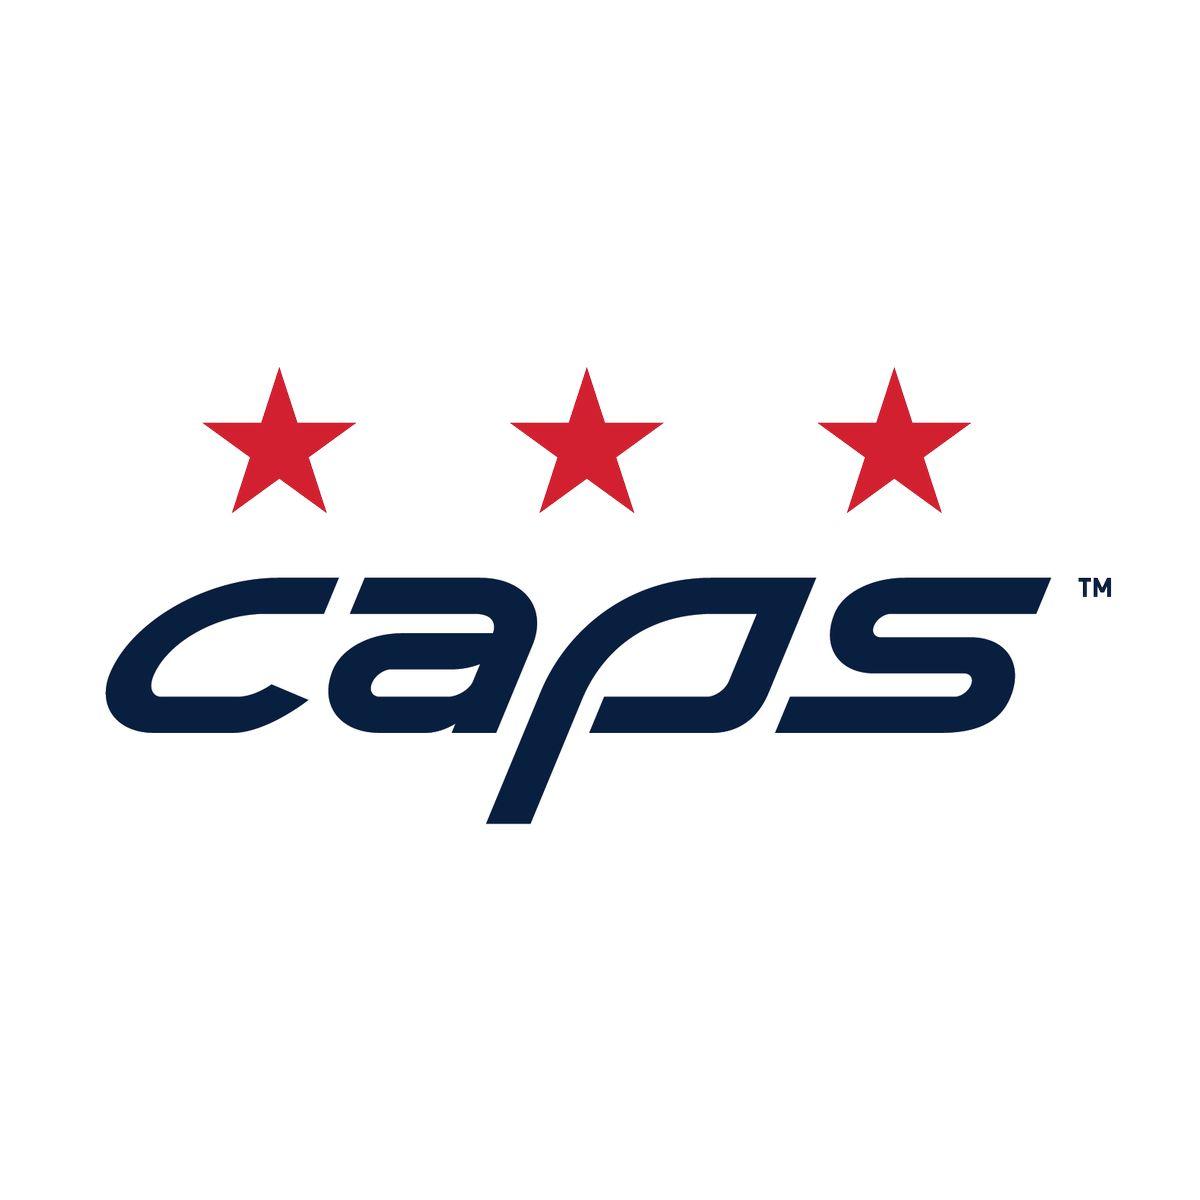 Capitals unveil 2018 Stadium Series logo